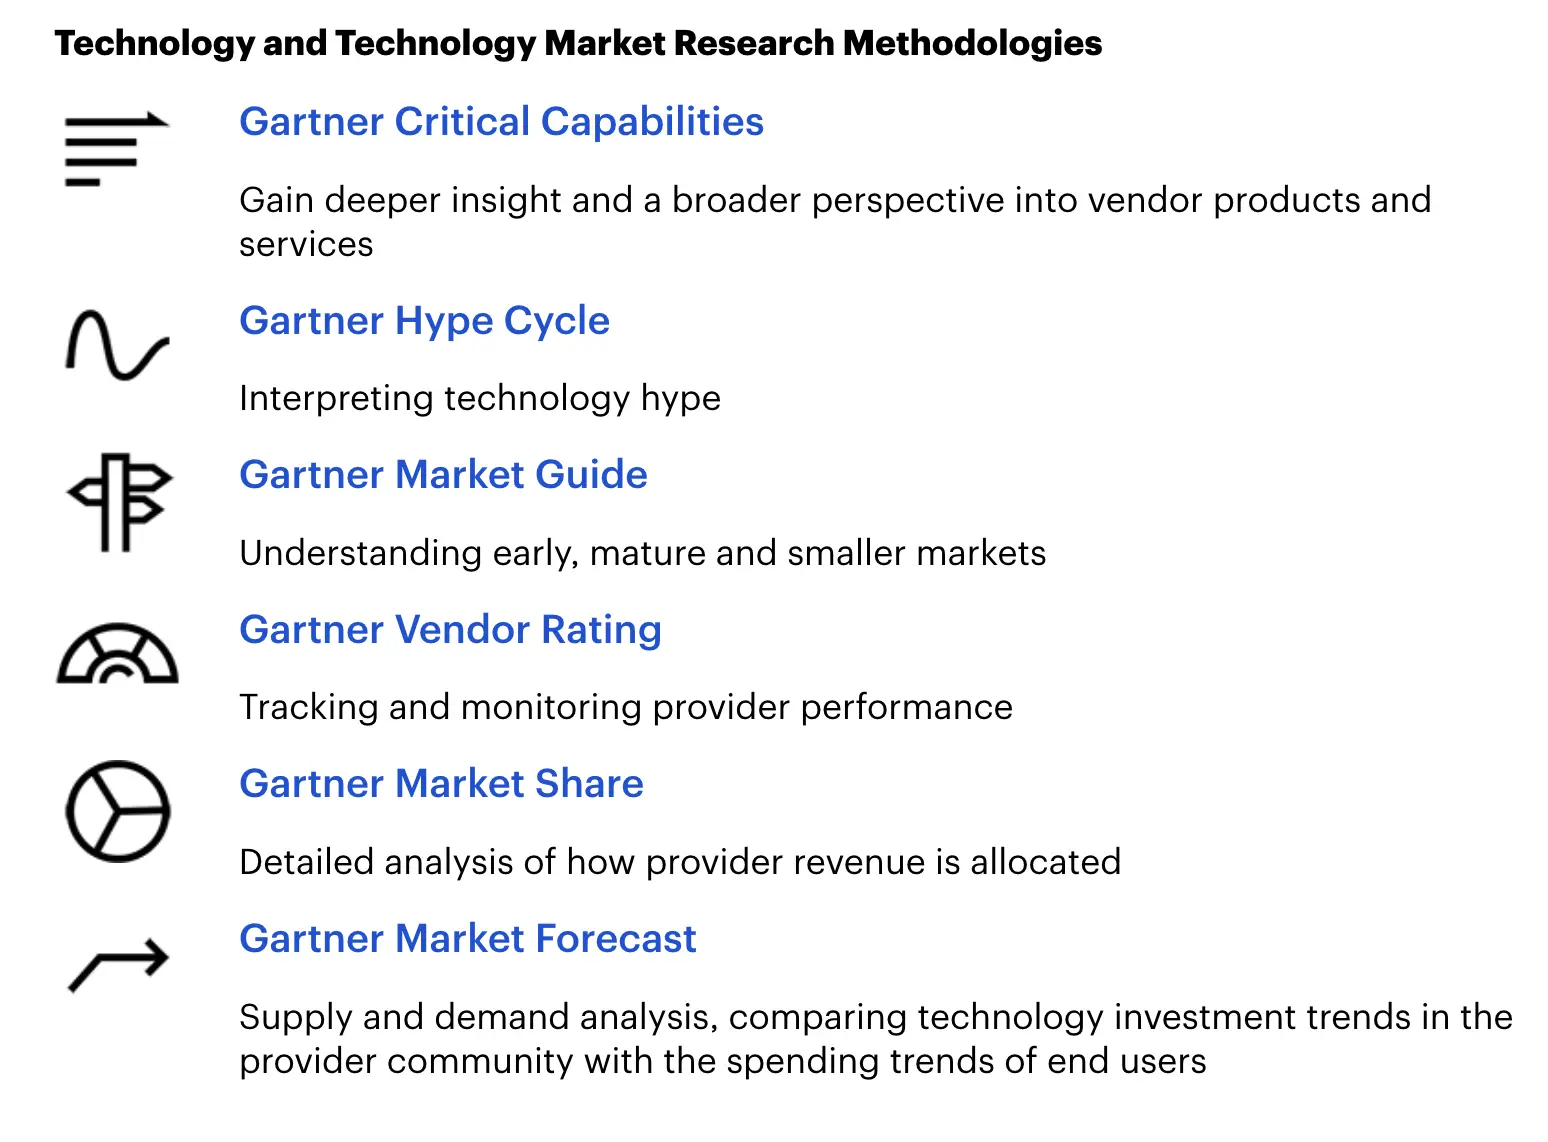 Gartner data catalog market research methodologies.